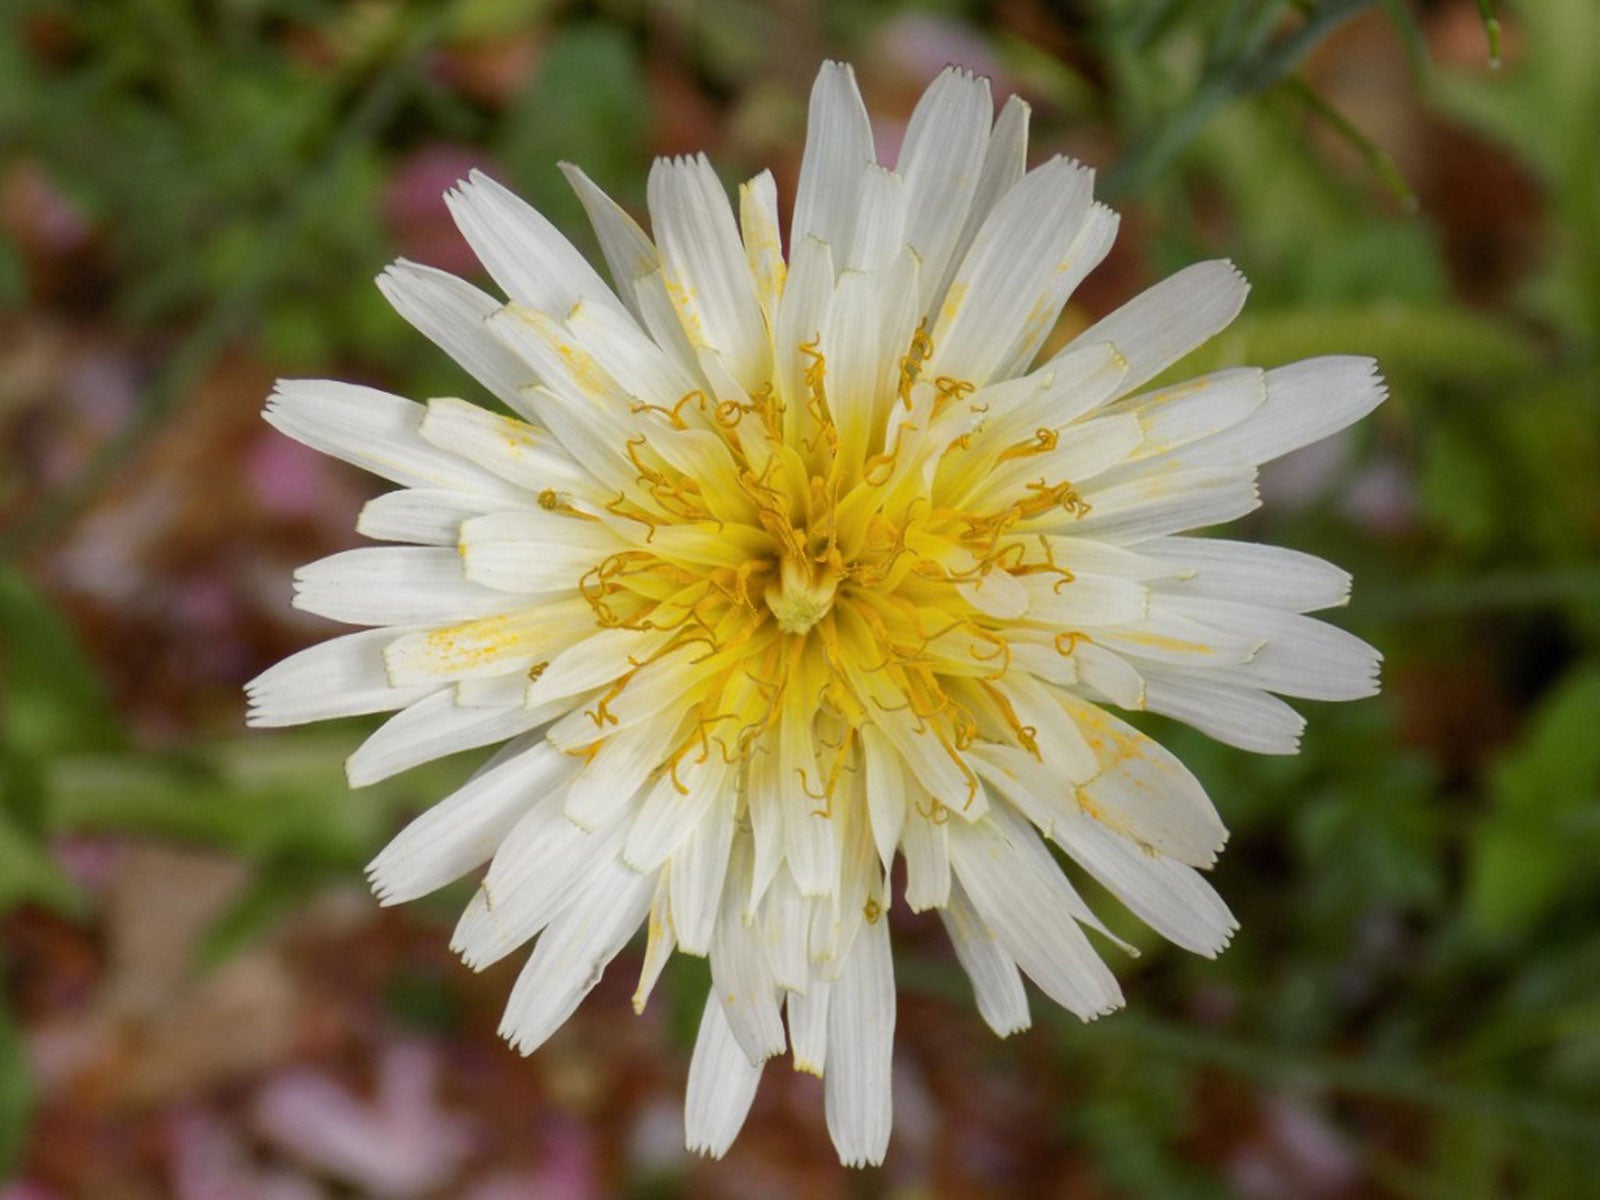 Varieties Of Dandelion – Different Dandelion Flowers In The Garden